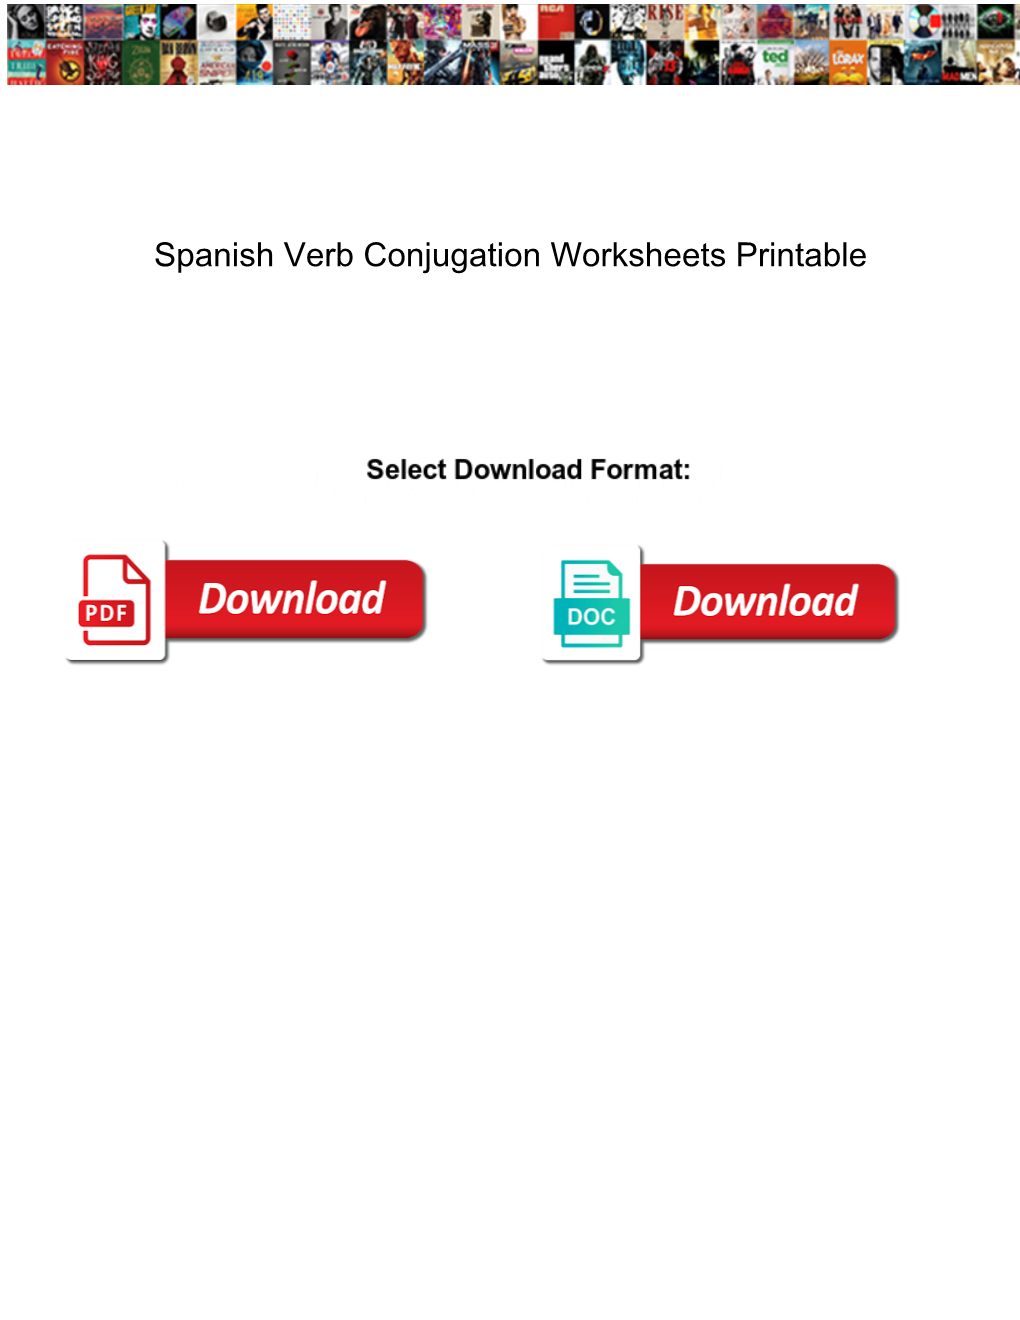 spanish-verb-conjugation-worksheets-printable-docslib